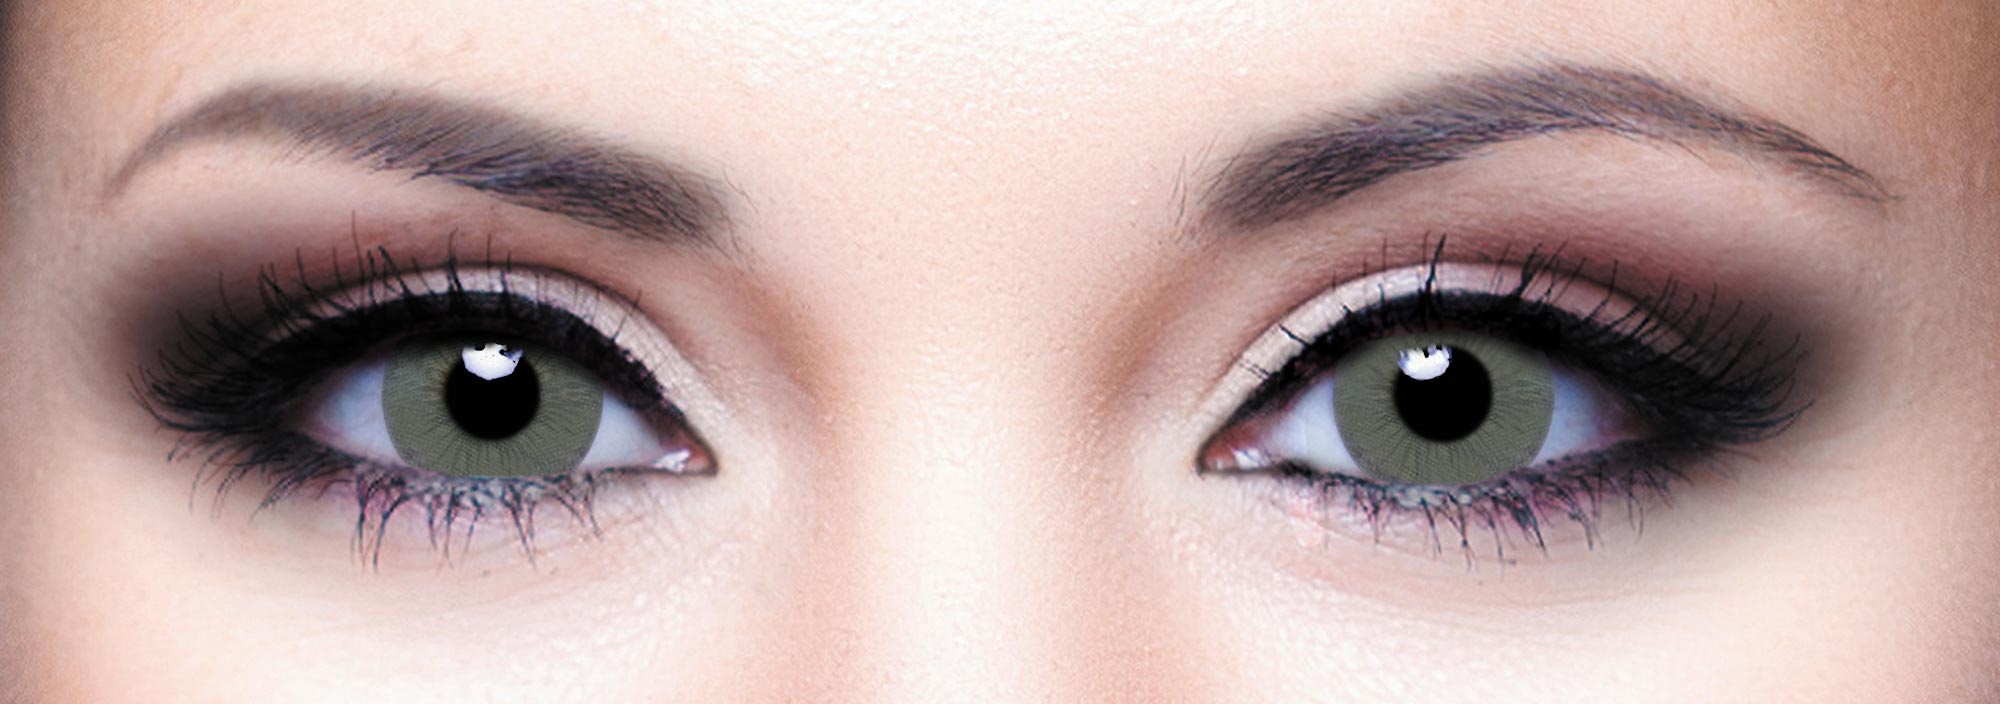 Купить Цветные контактные линзы Hera Vogue Grey, 2 линзы, Dreamcon Co Ltd